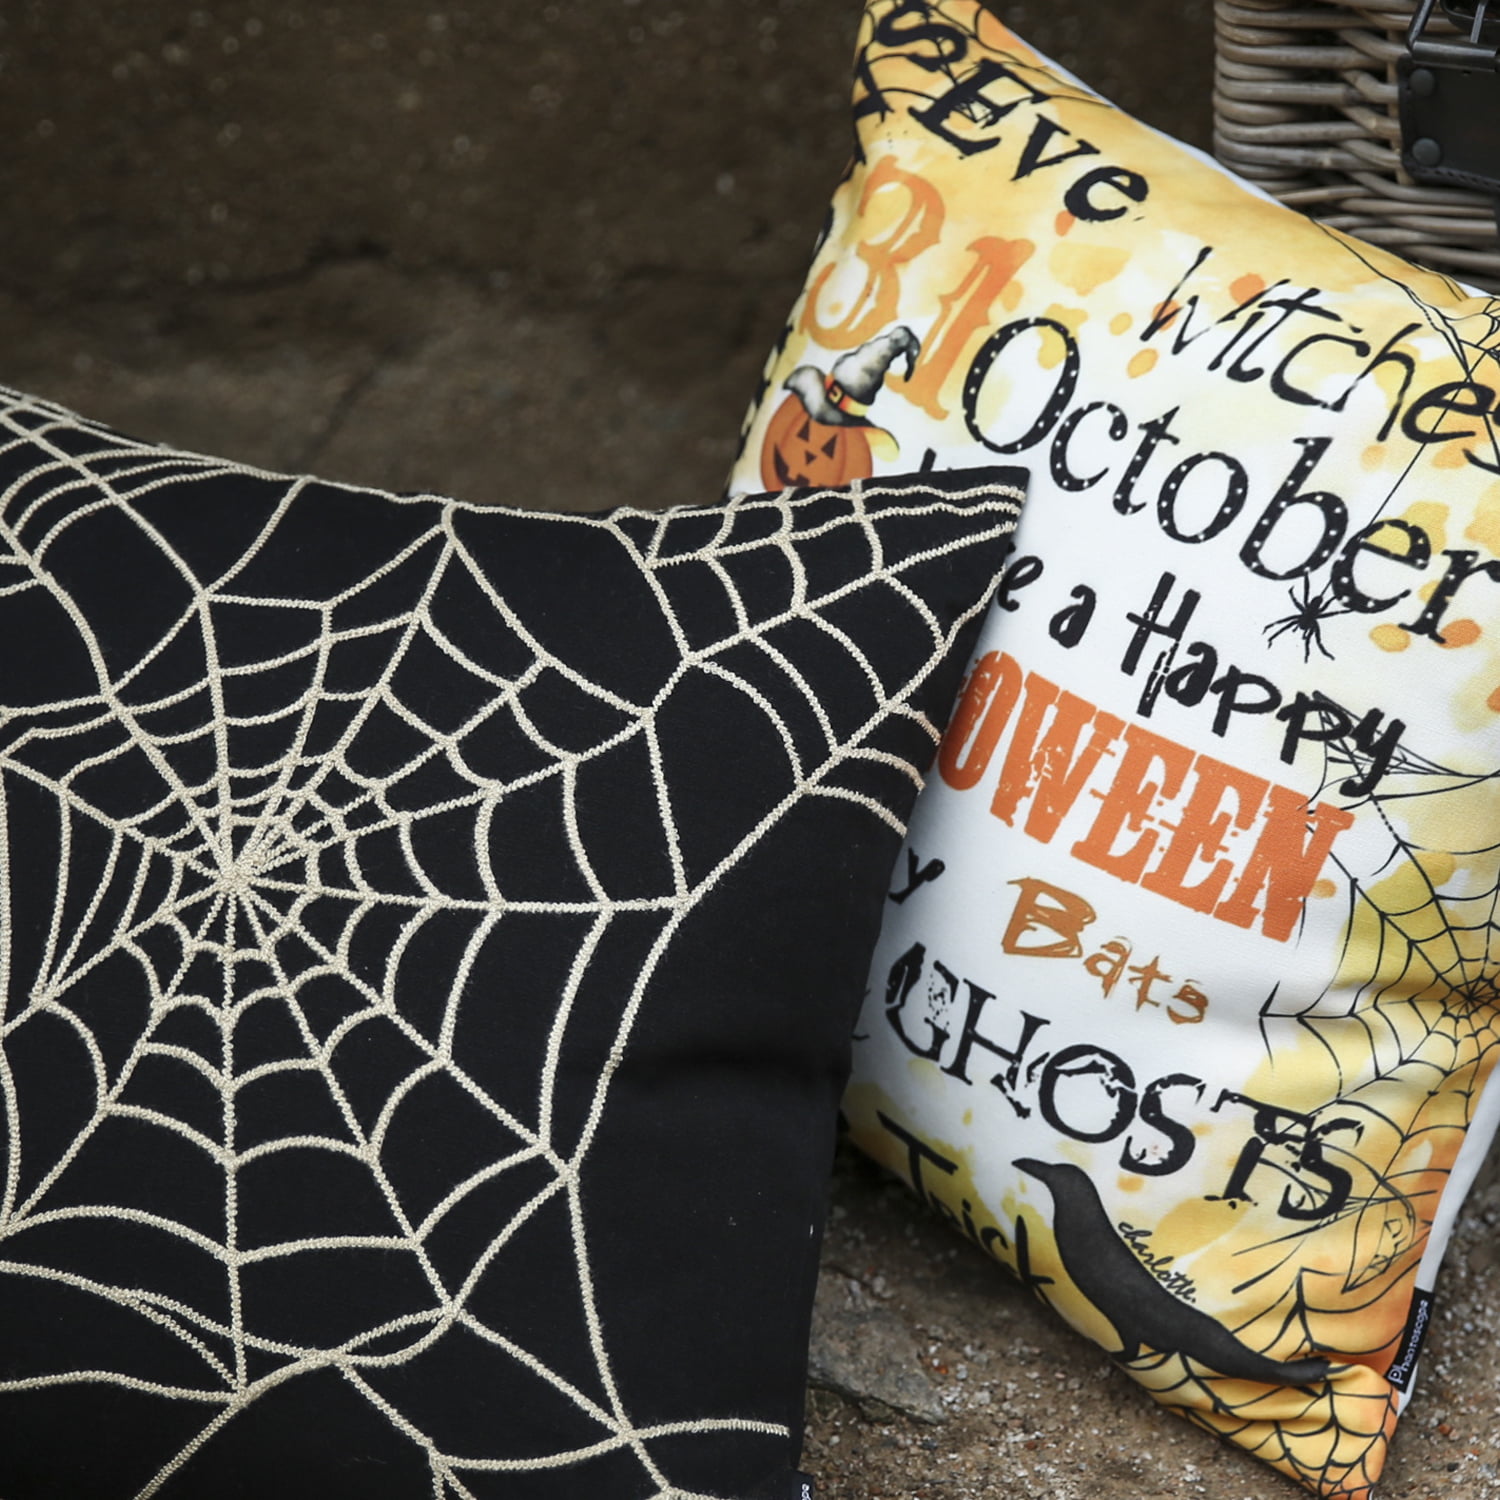 Indoor/Outdoor Halloween Spider Web Cotton Throw Pillow